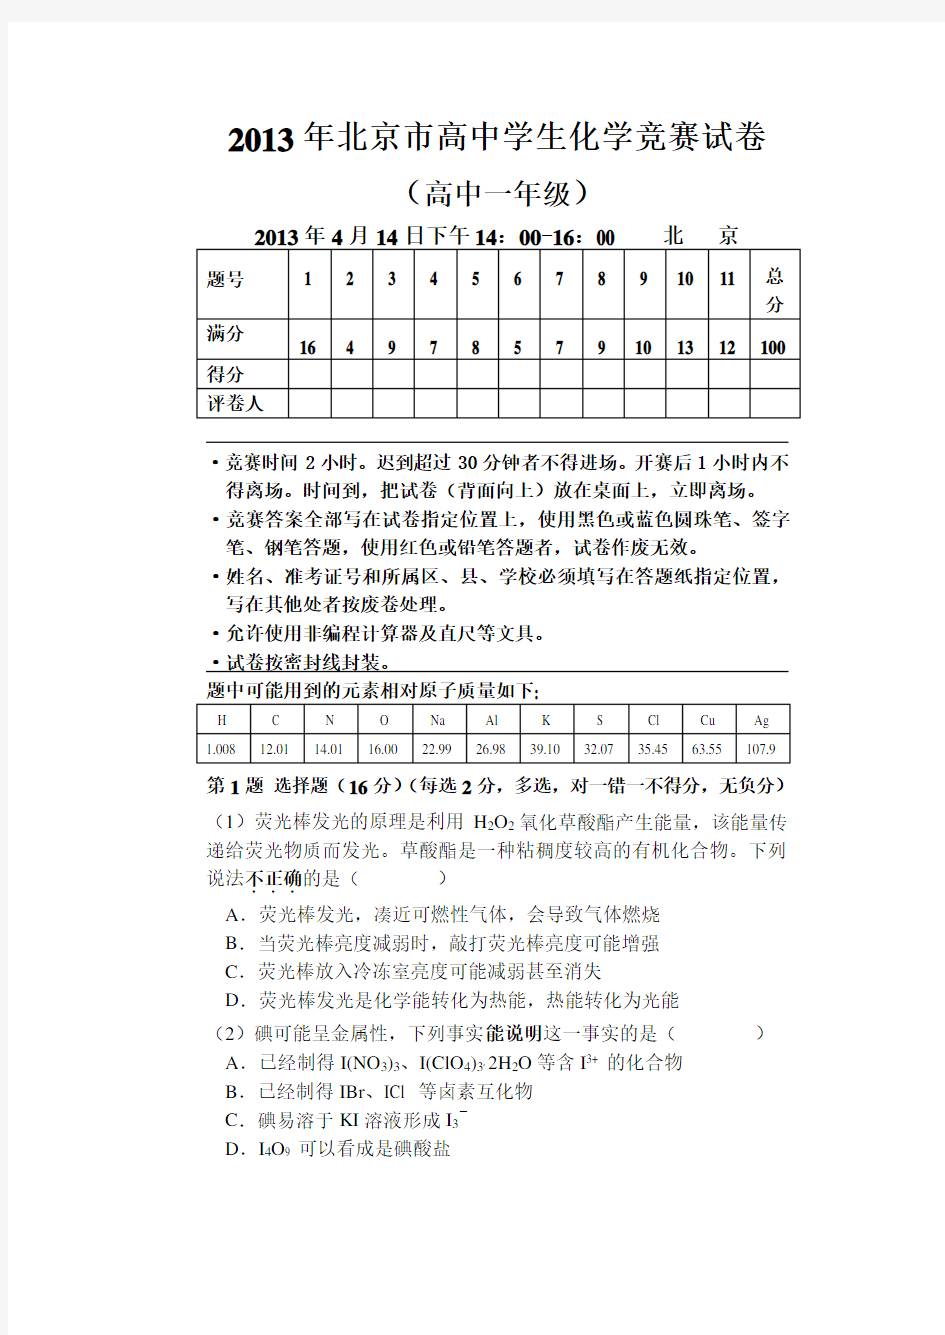 北京市高中学生化学竞赛试卷(高中一级)